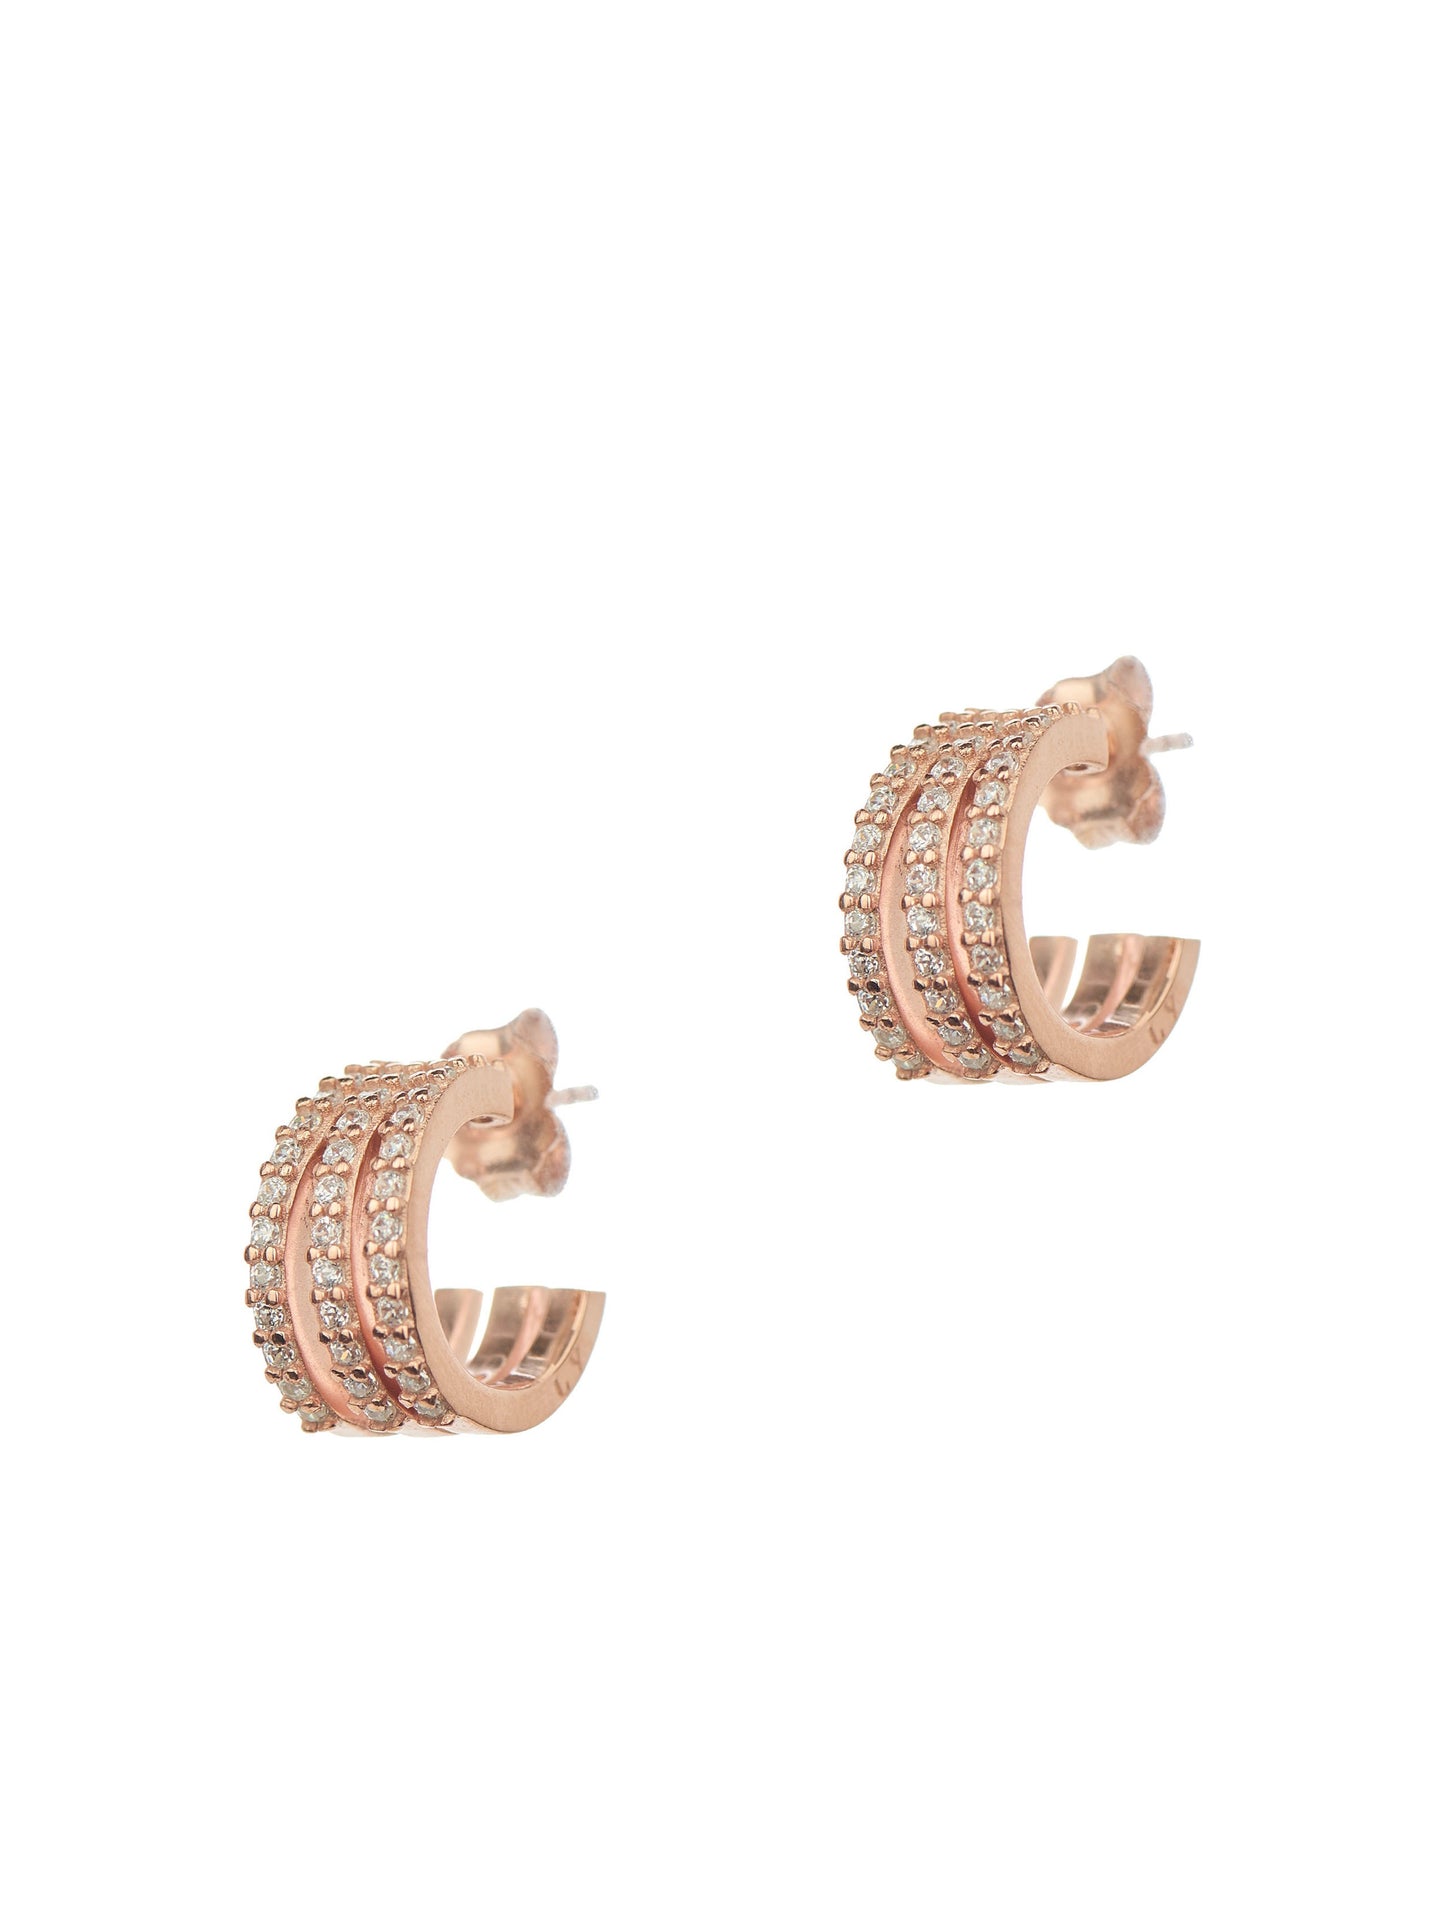 Triple Pair Hoops Earrings - Pink Gold Plated